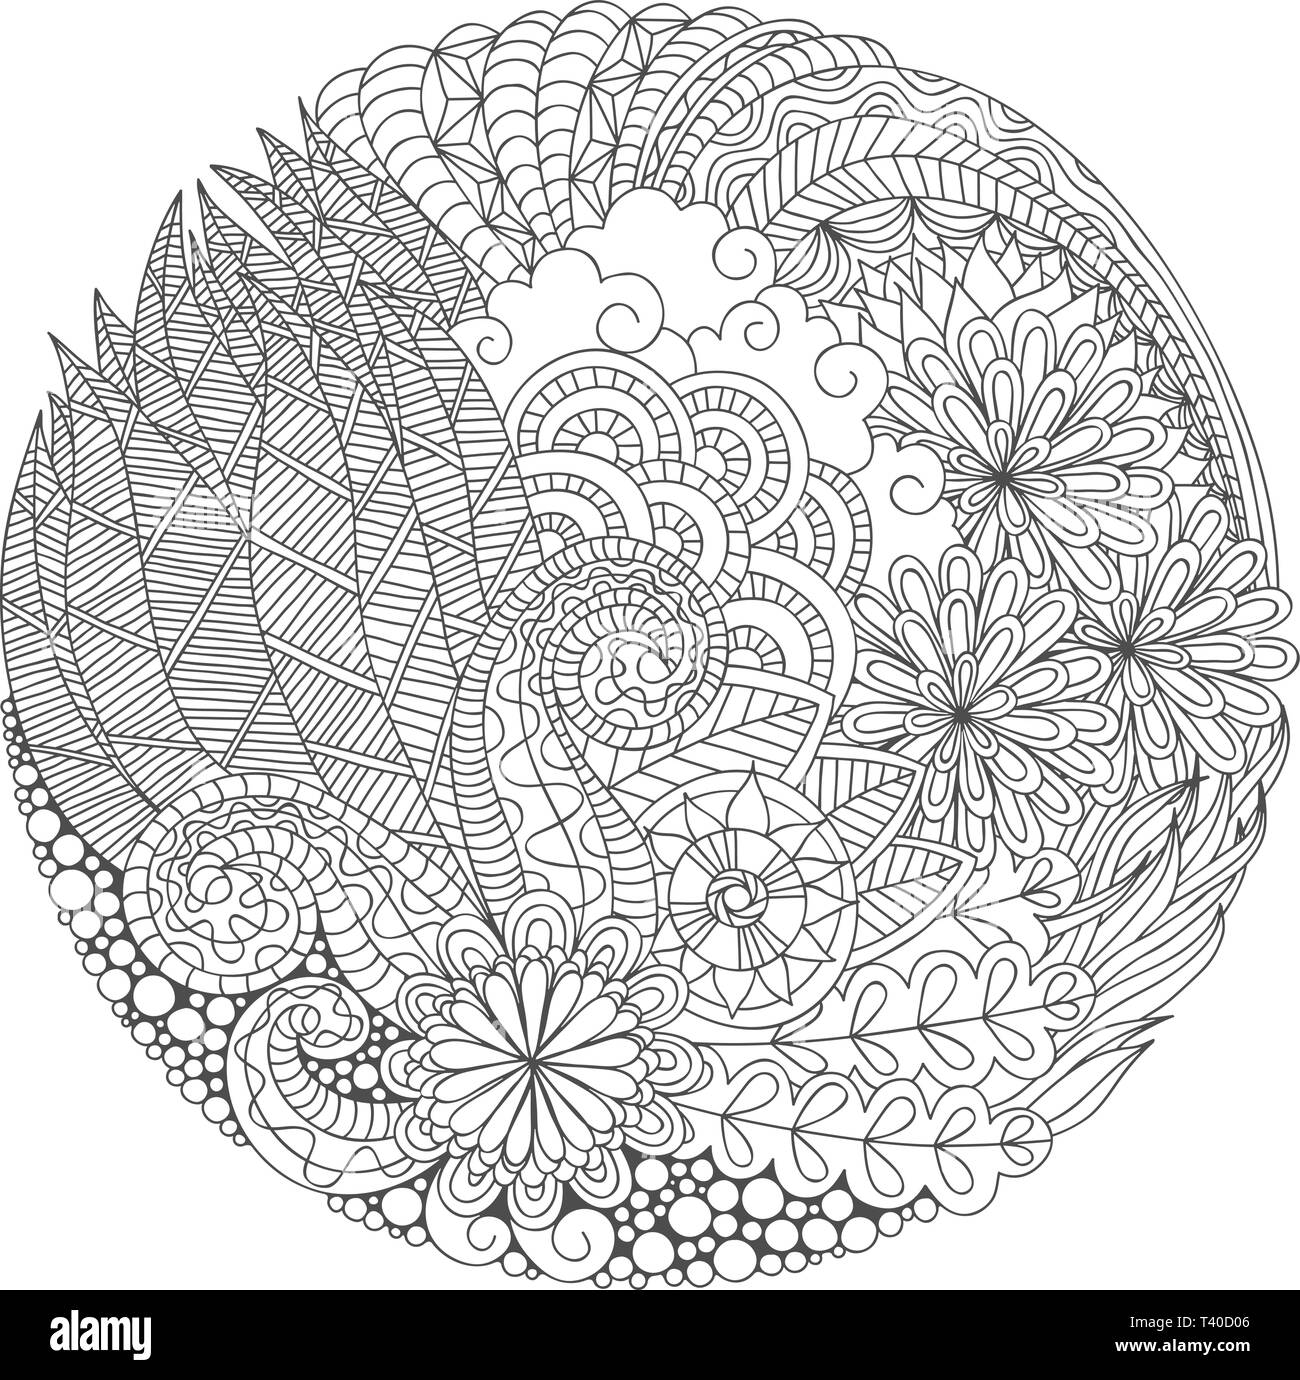 Pagina di colorazione con disegnati a mano round dettagliate composizione floreale per adulti anti stress meditazione. Illustrazione Vettoriale